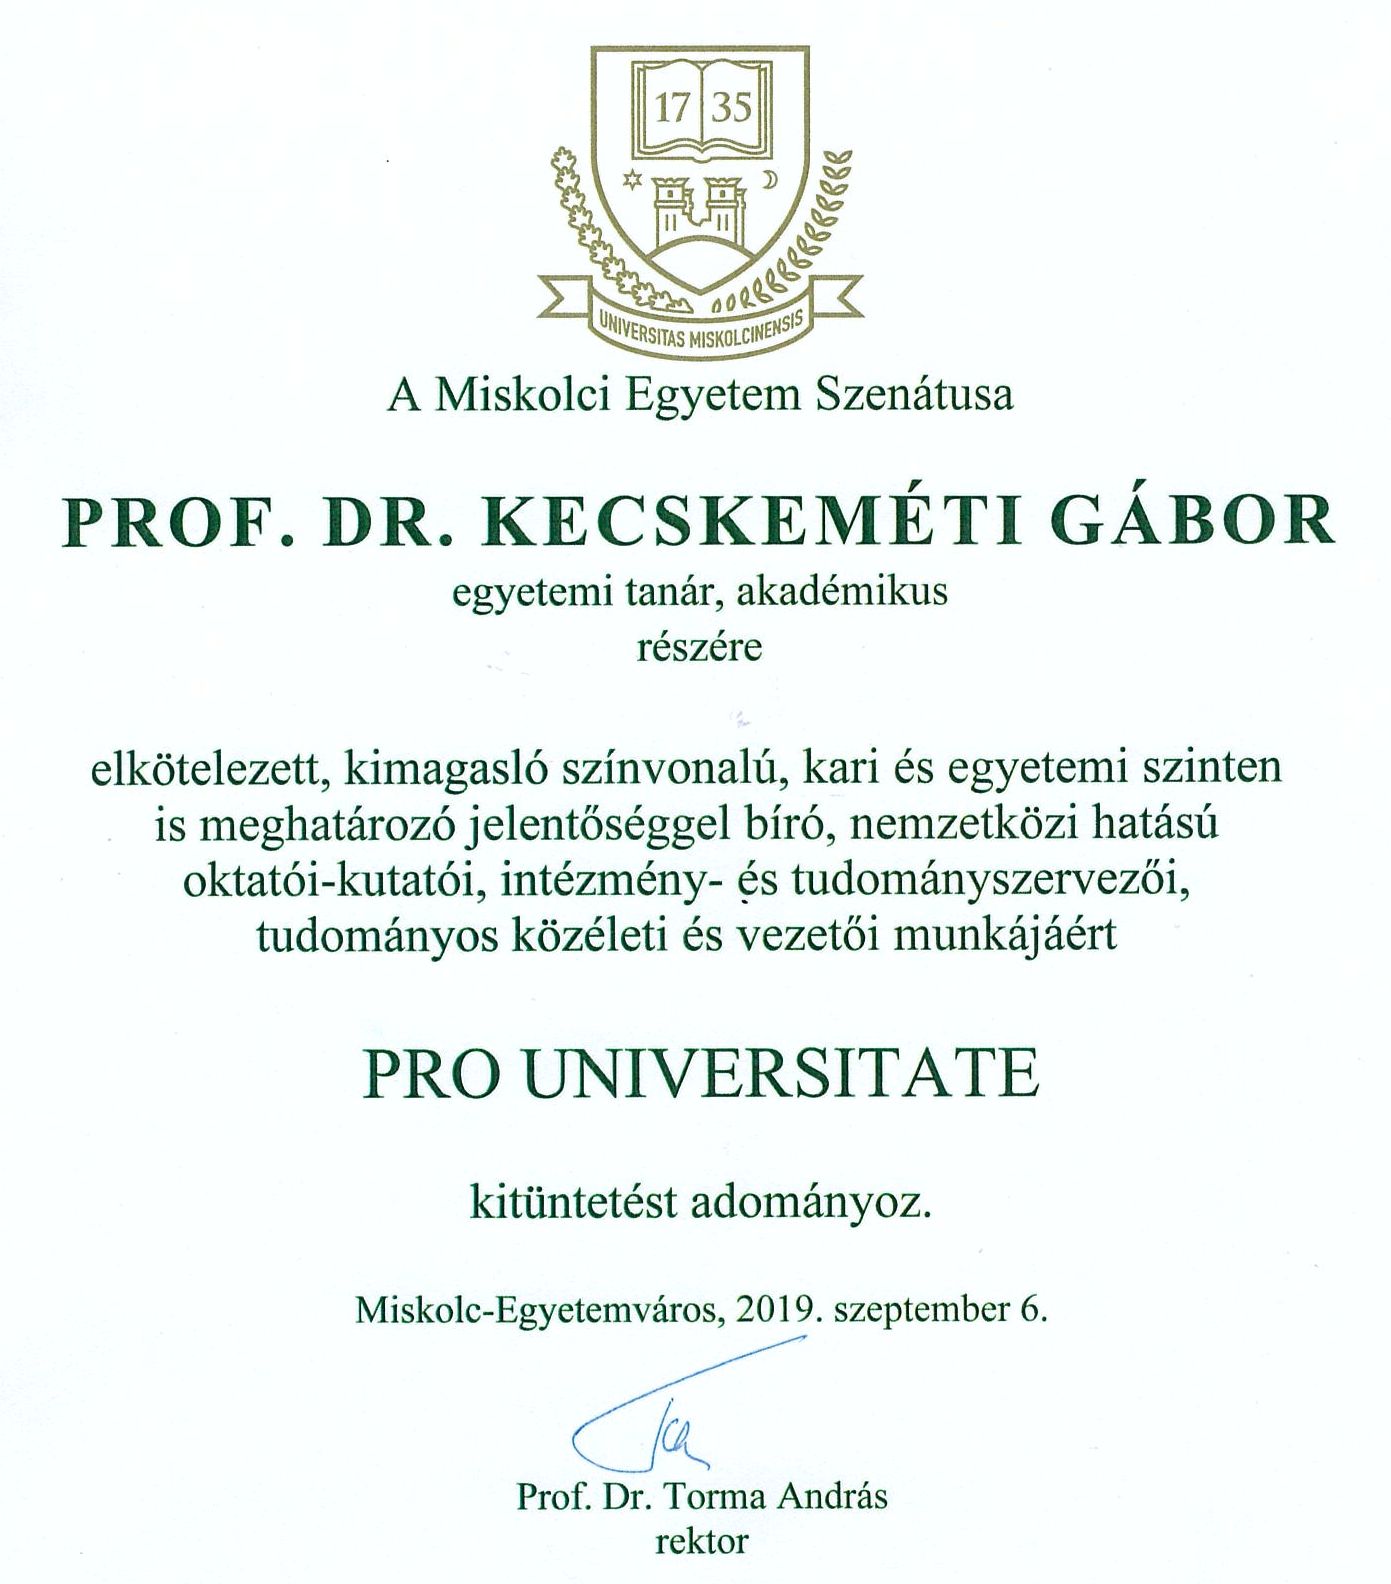 Kecskeméti Gábor Pro Universitate kitüntetést kapott